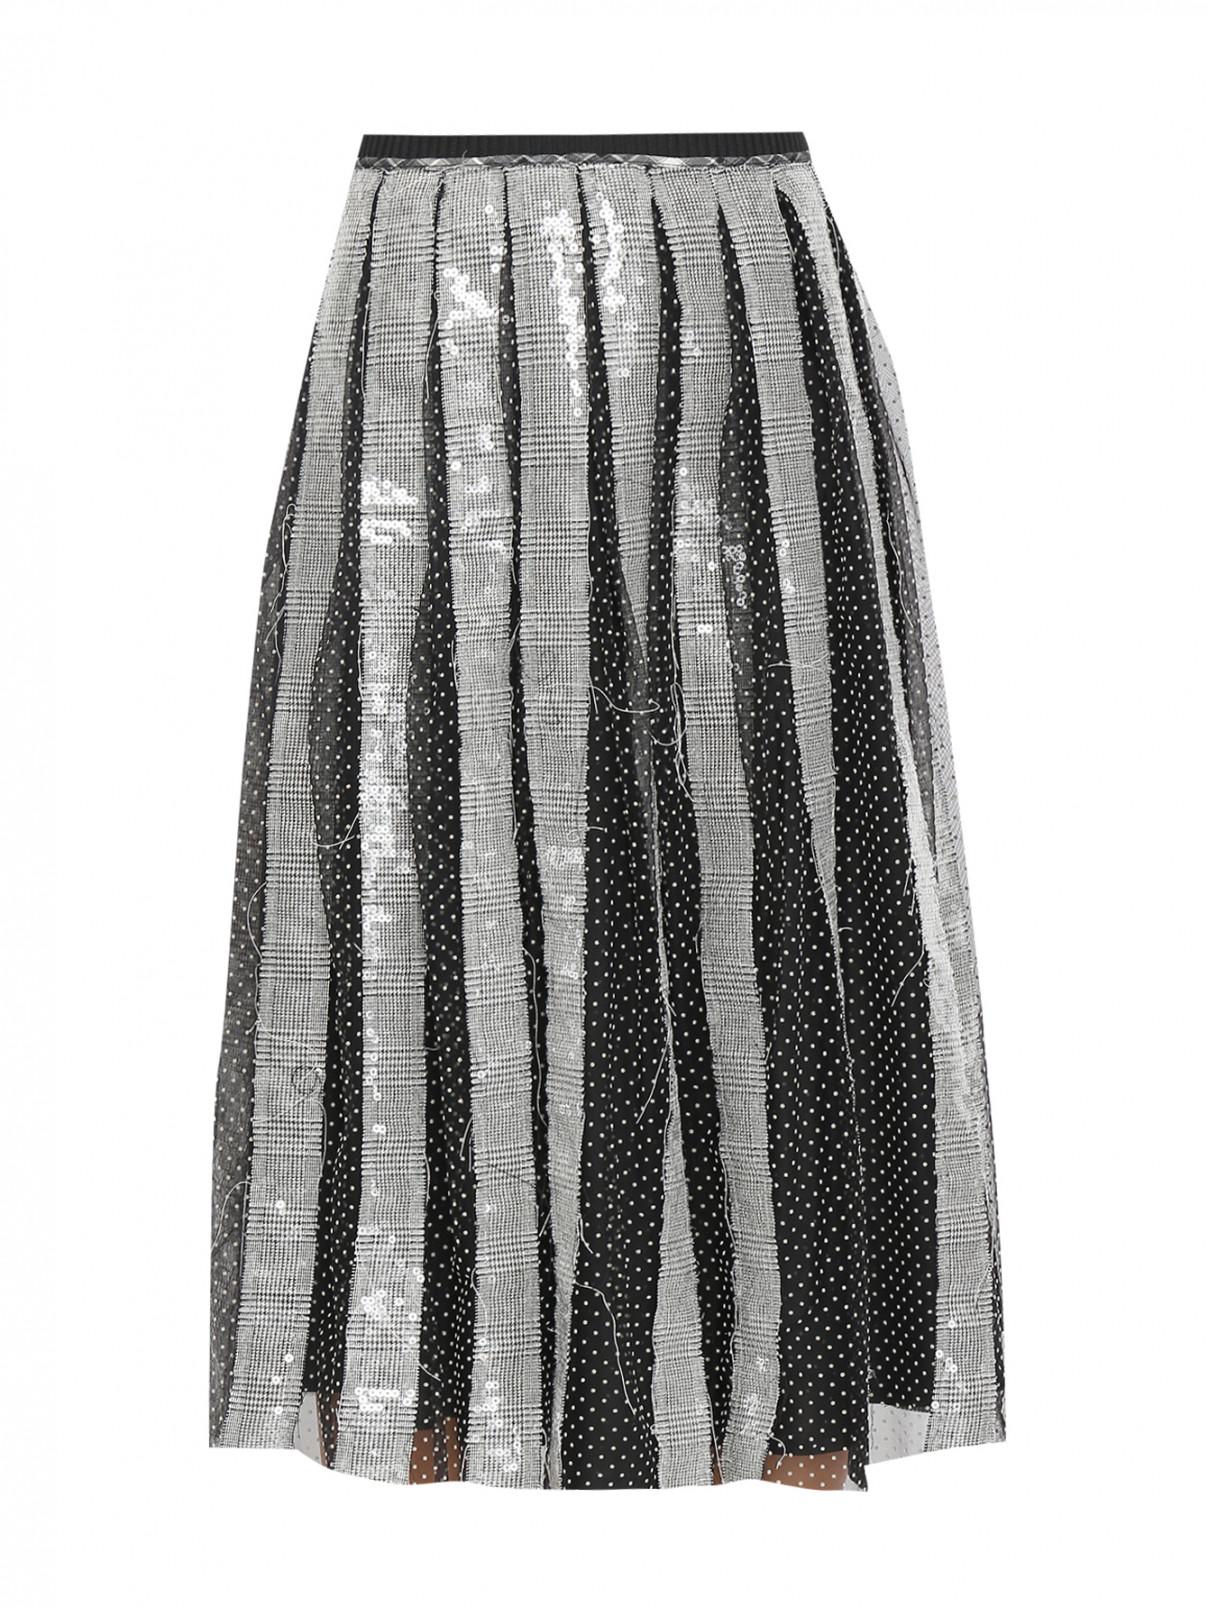 Юбка-трапеция, декорированная пайетками Antonio Marras  –  Общий вид  – Цвет:  Черный